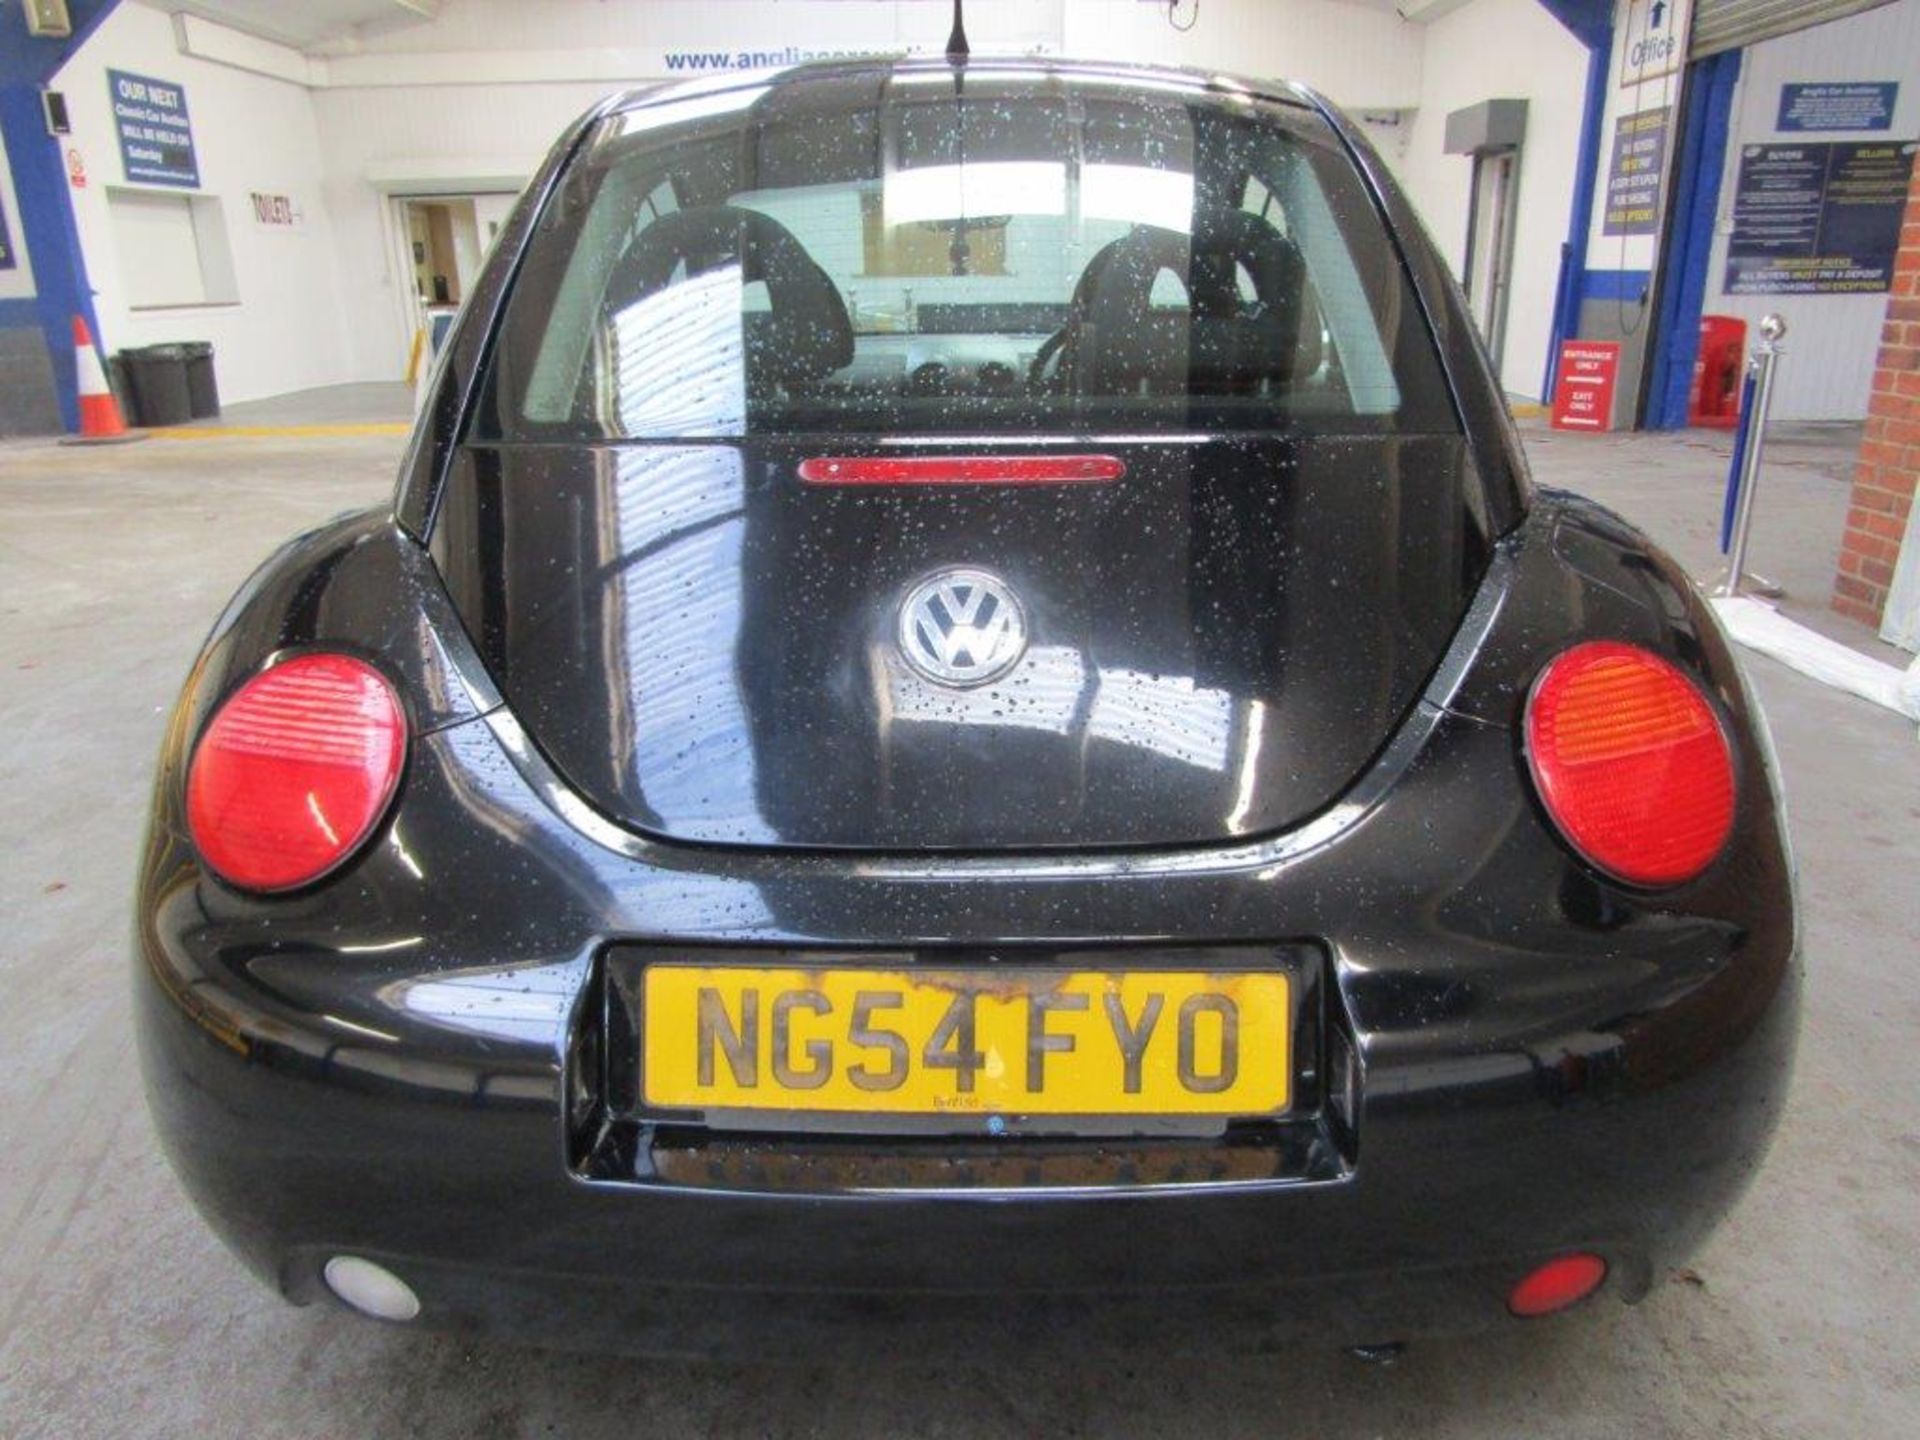 54 04 VW Beetle - Image 4 of 21